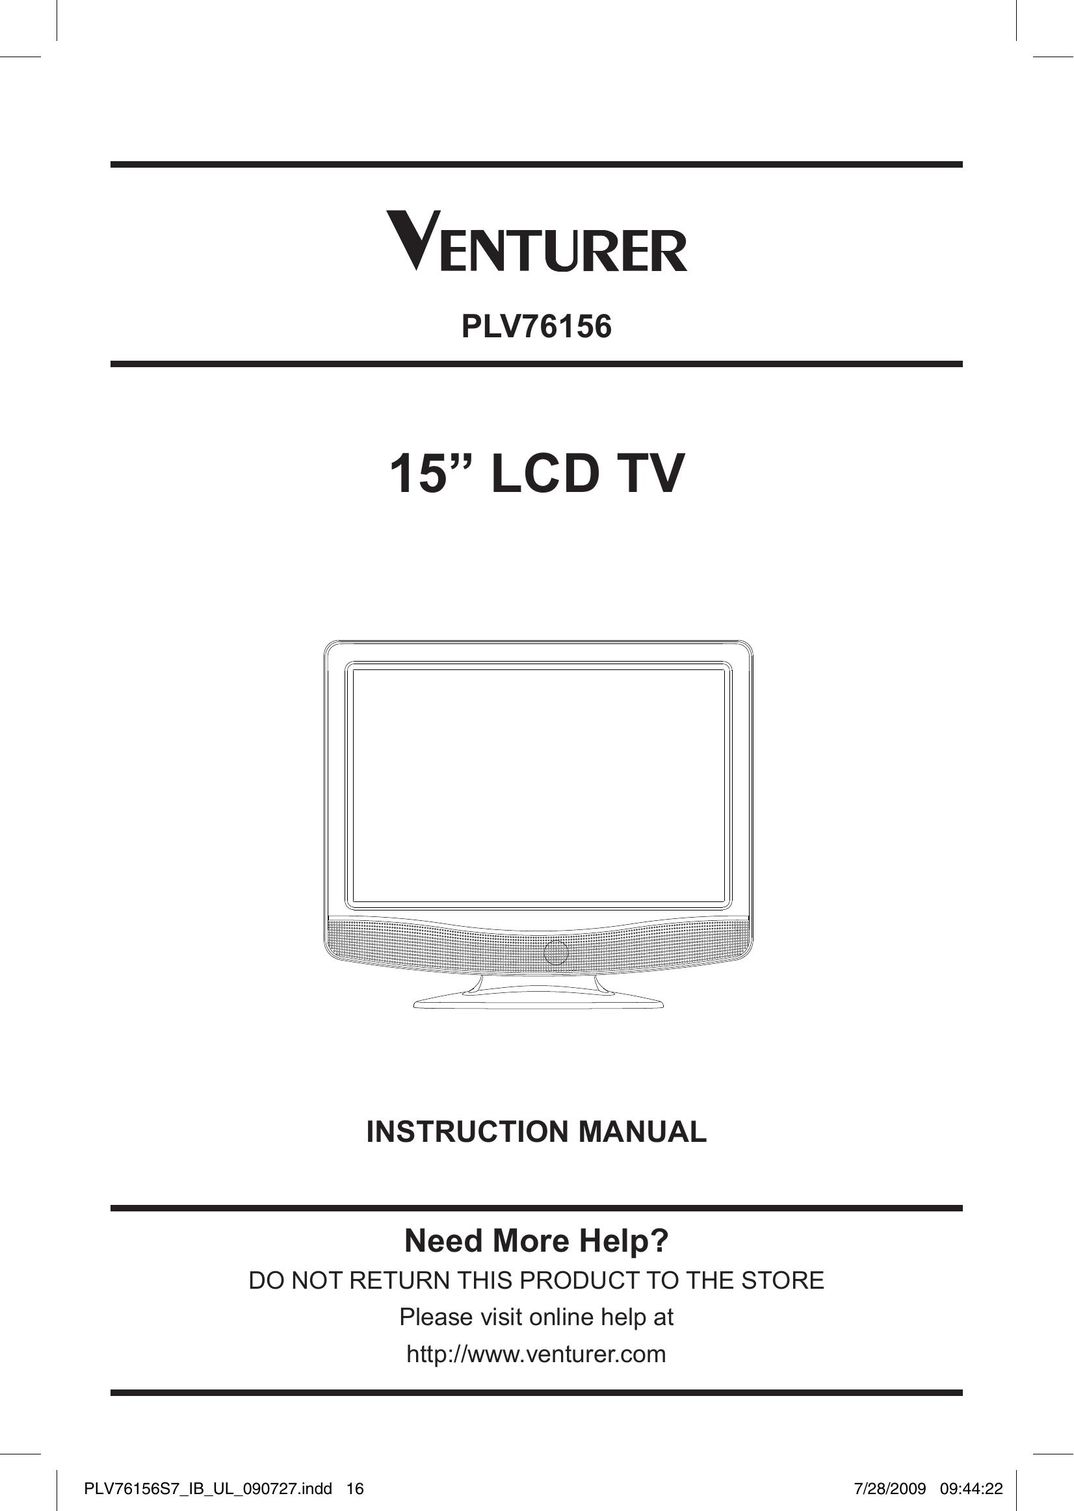 Venturer PLV76156 Flat Panel Television User Manual